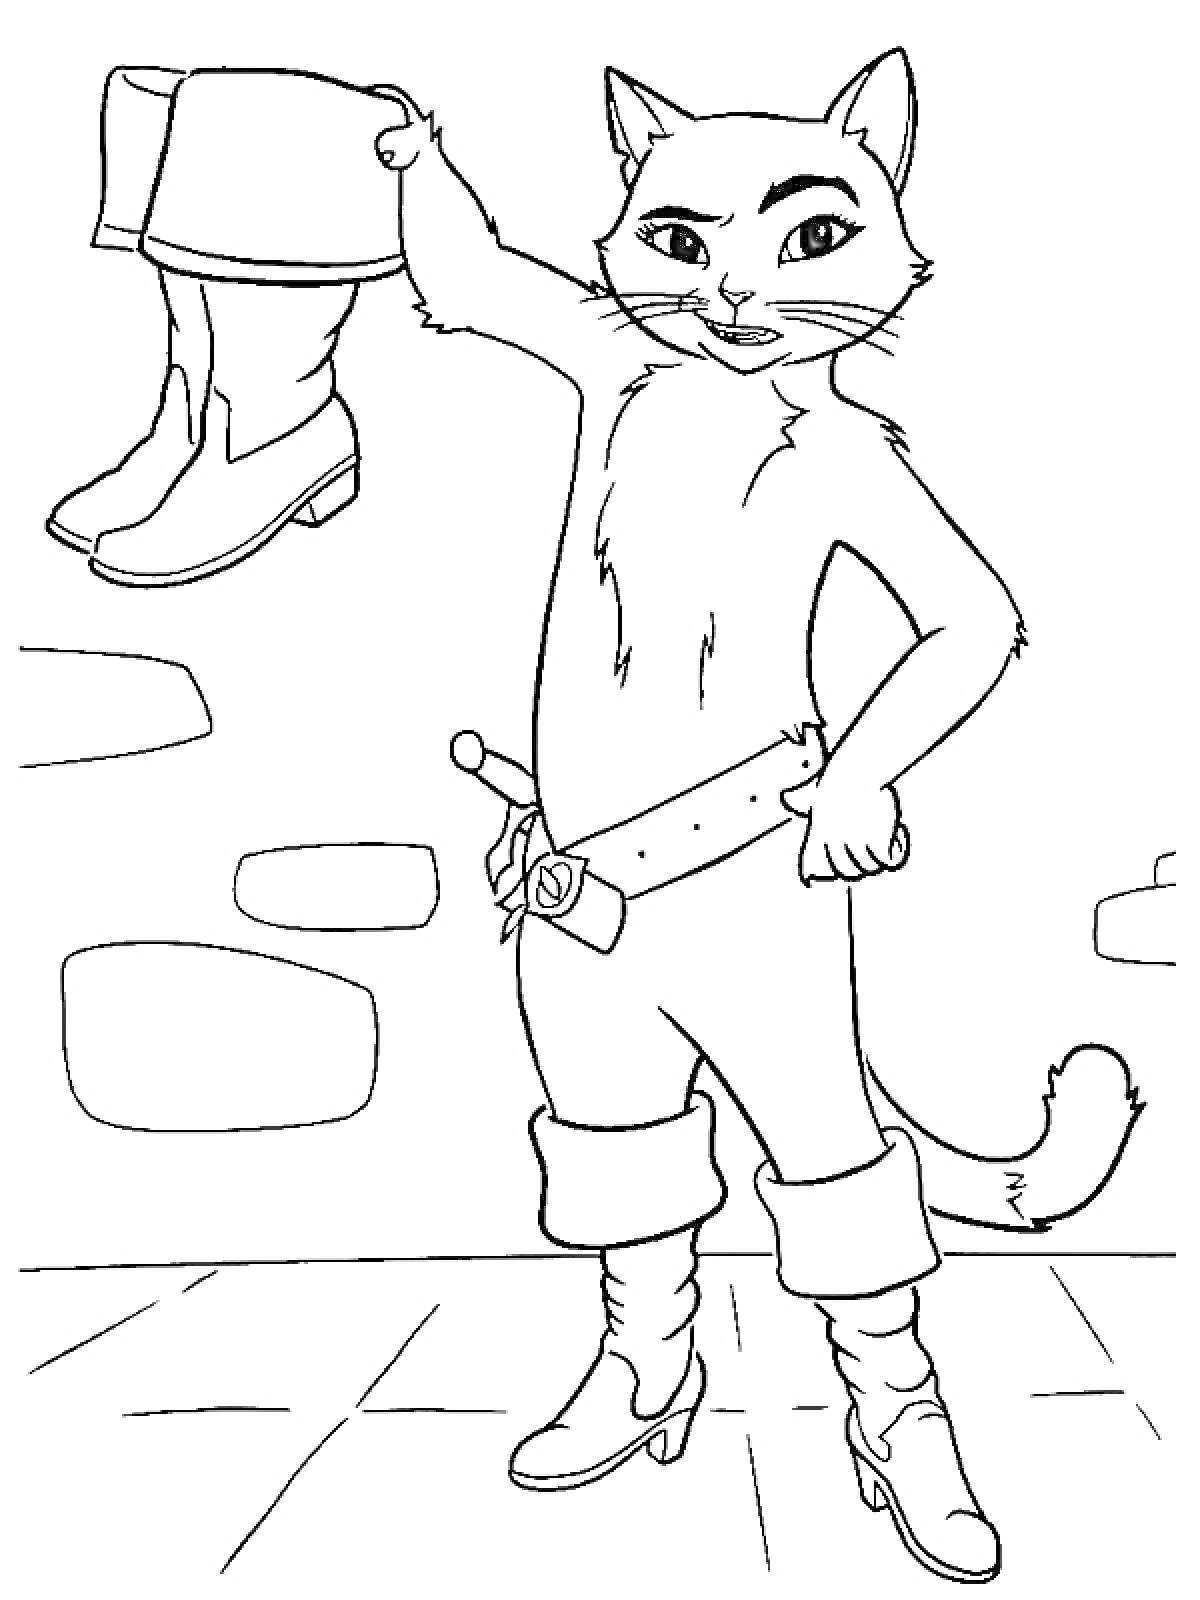  Кот в сапогах, стоящий в сапогах и держащий один сапог на фоне каменной стены